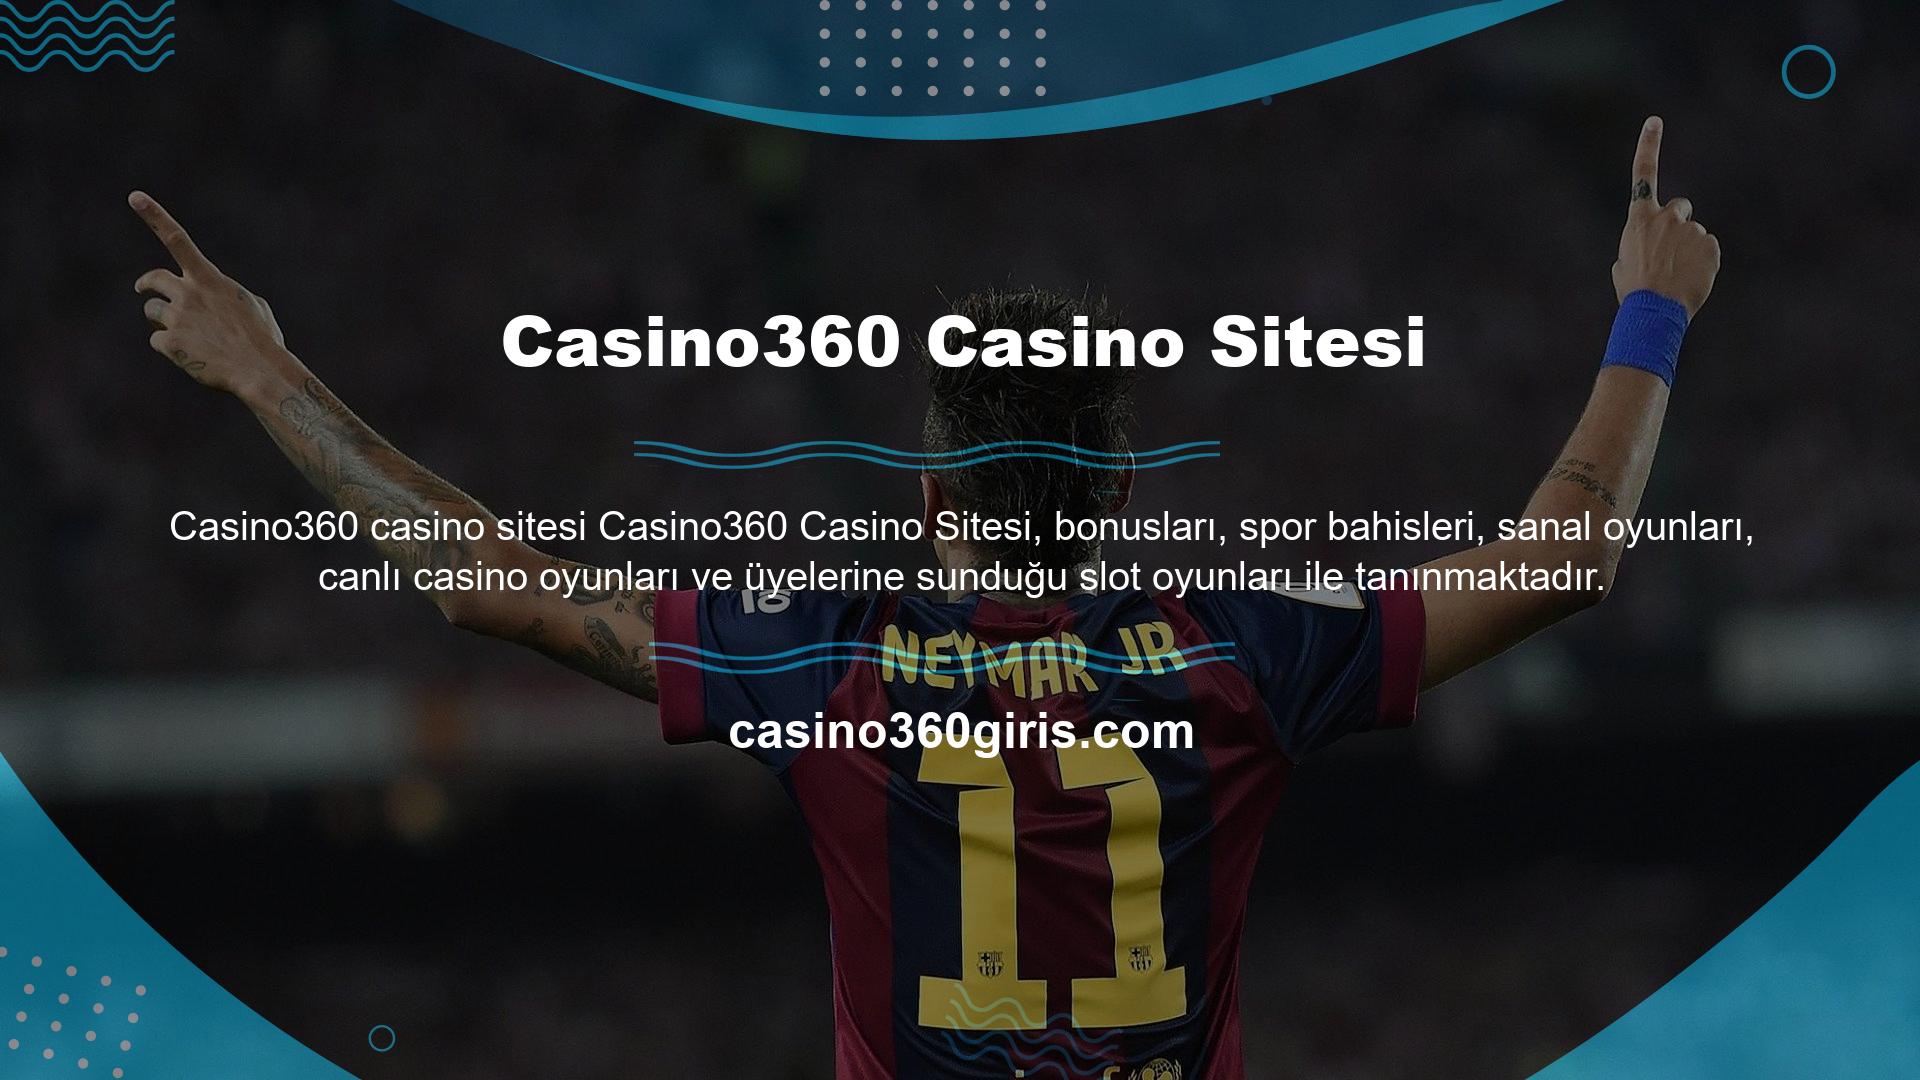 Casino360 giriş programı, alanındaki en bağlı sitelerden biridir ve siteye erişmek, üyelik açmak ve para yatırmak için kullanılabilir